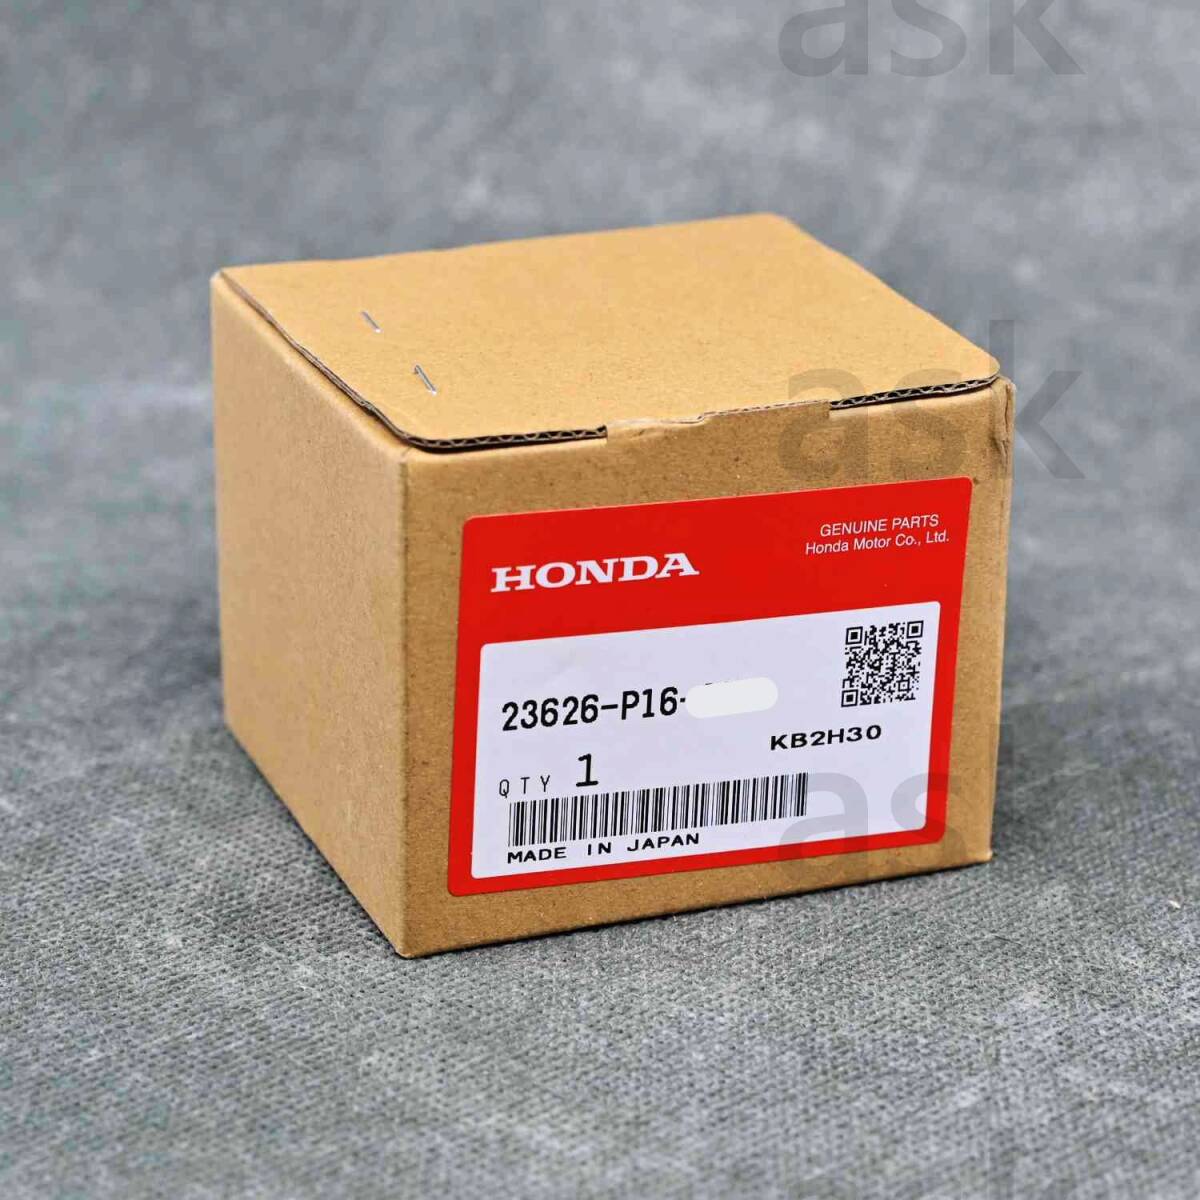 * new goods HONDA Prelude, Ascot Inova, CRV, HRV for synchronizer sleeve set (5) Synchronizer Set Honda original part 